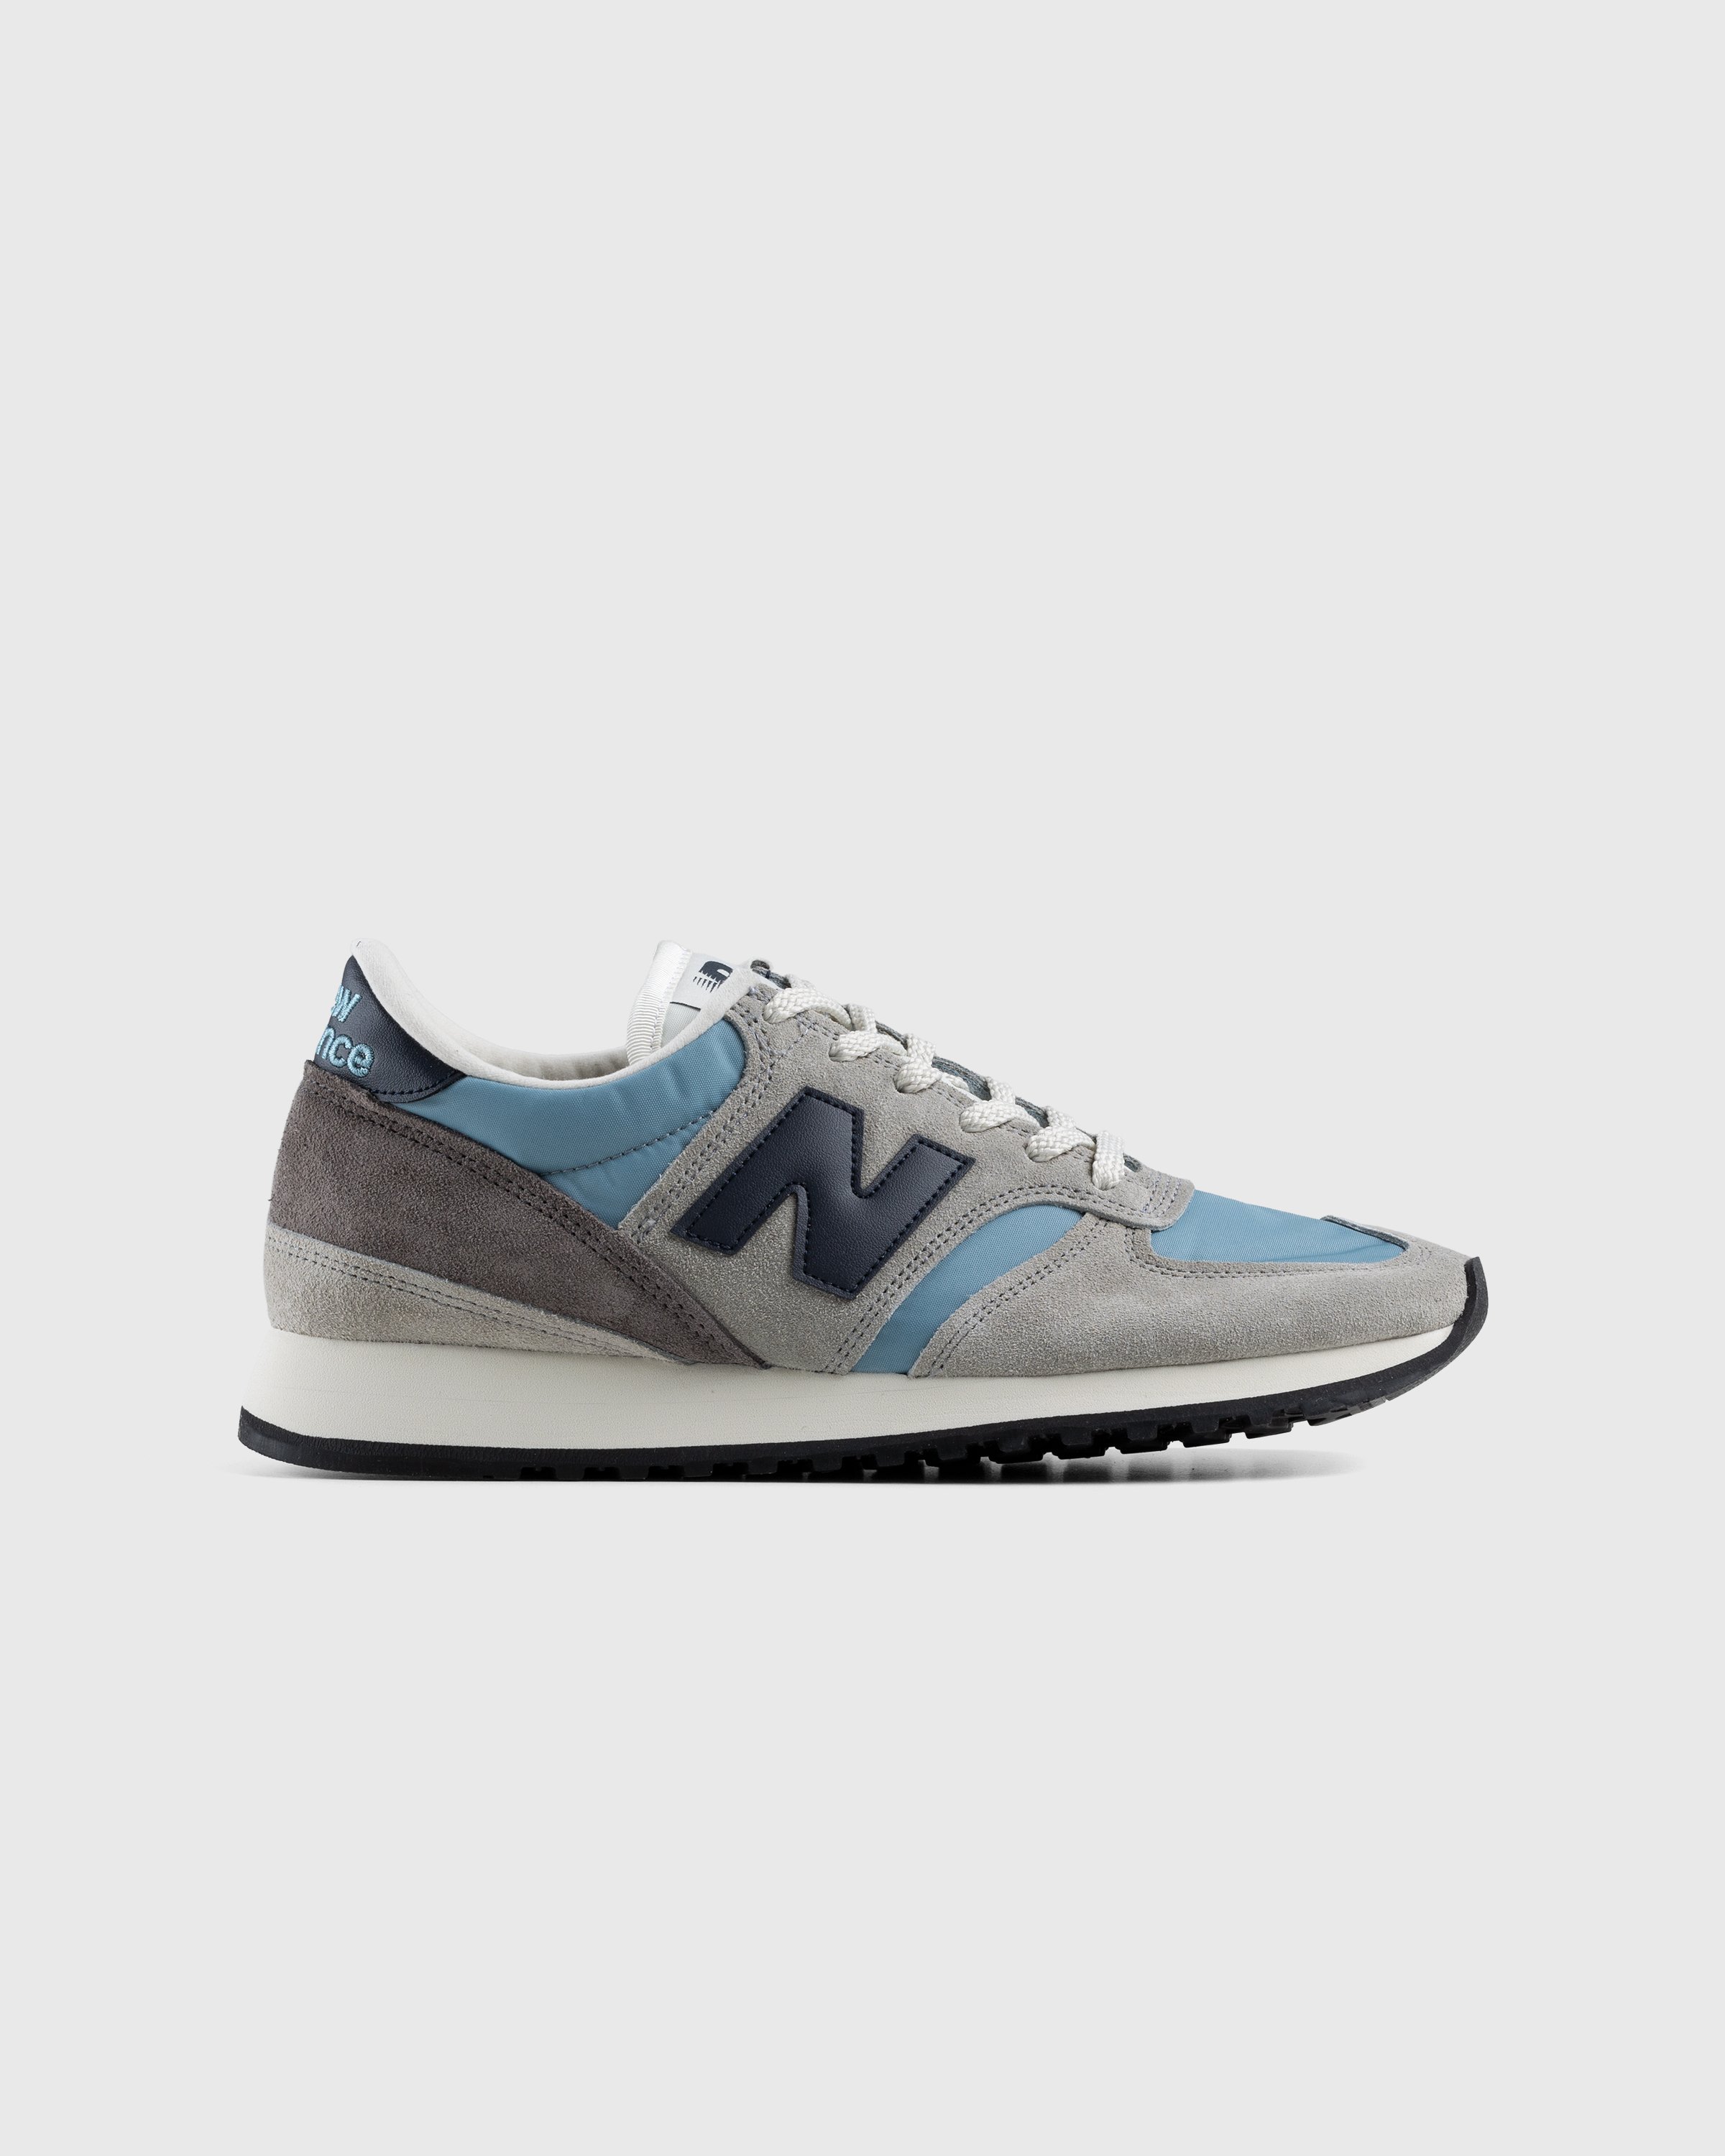 New Balance - M730GBN Grey/Blue - Footwear - Grey - Image 1